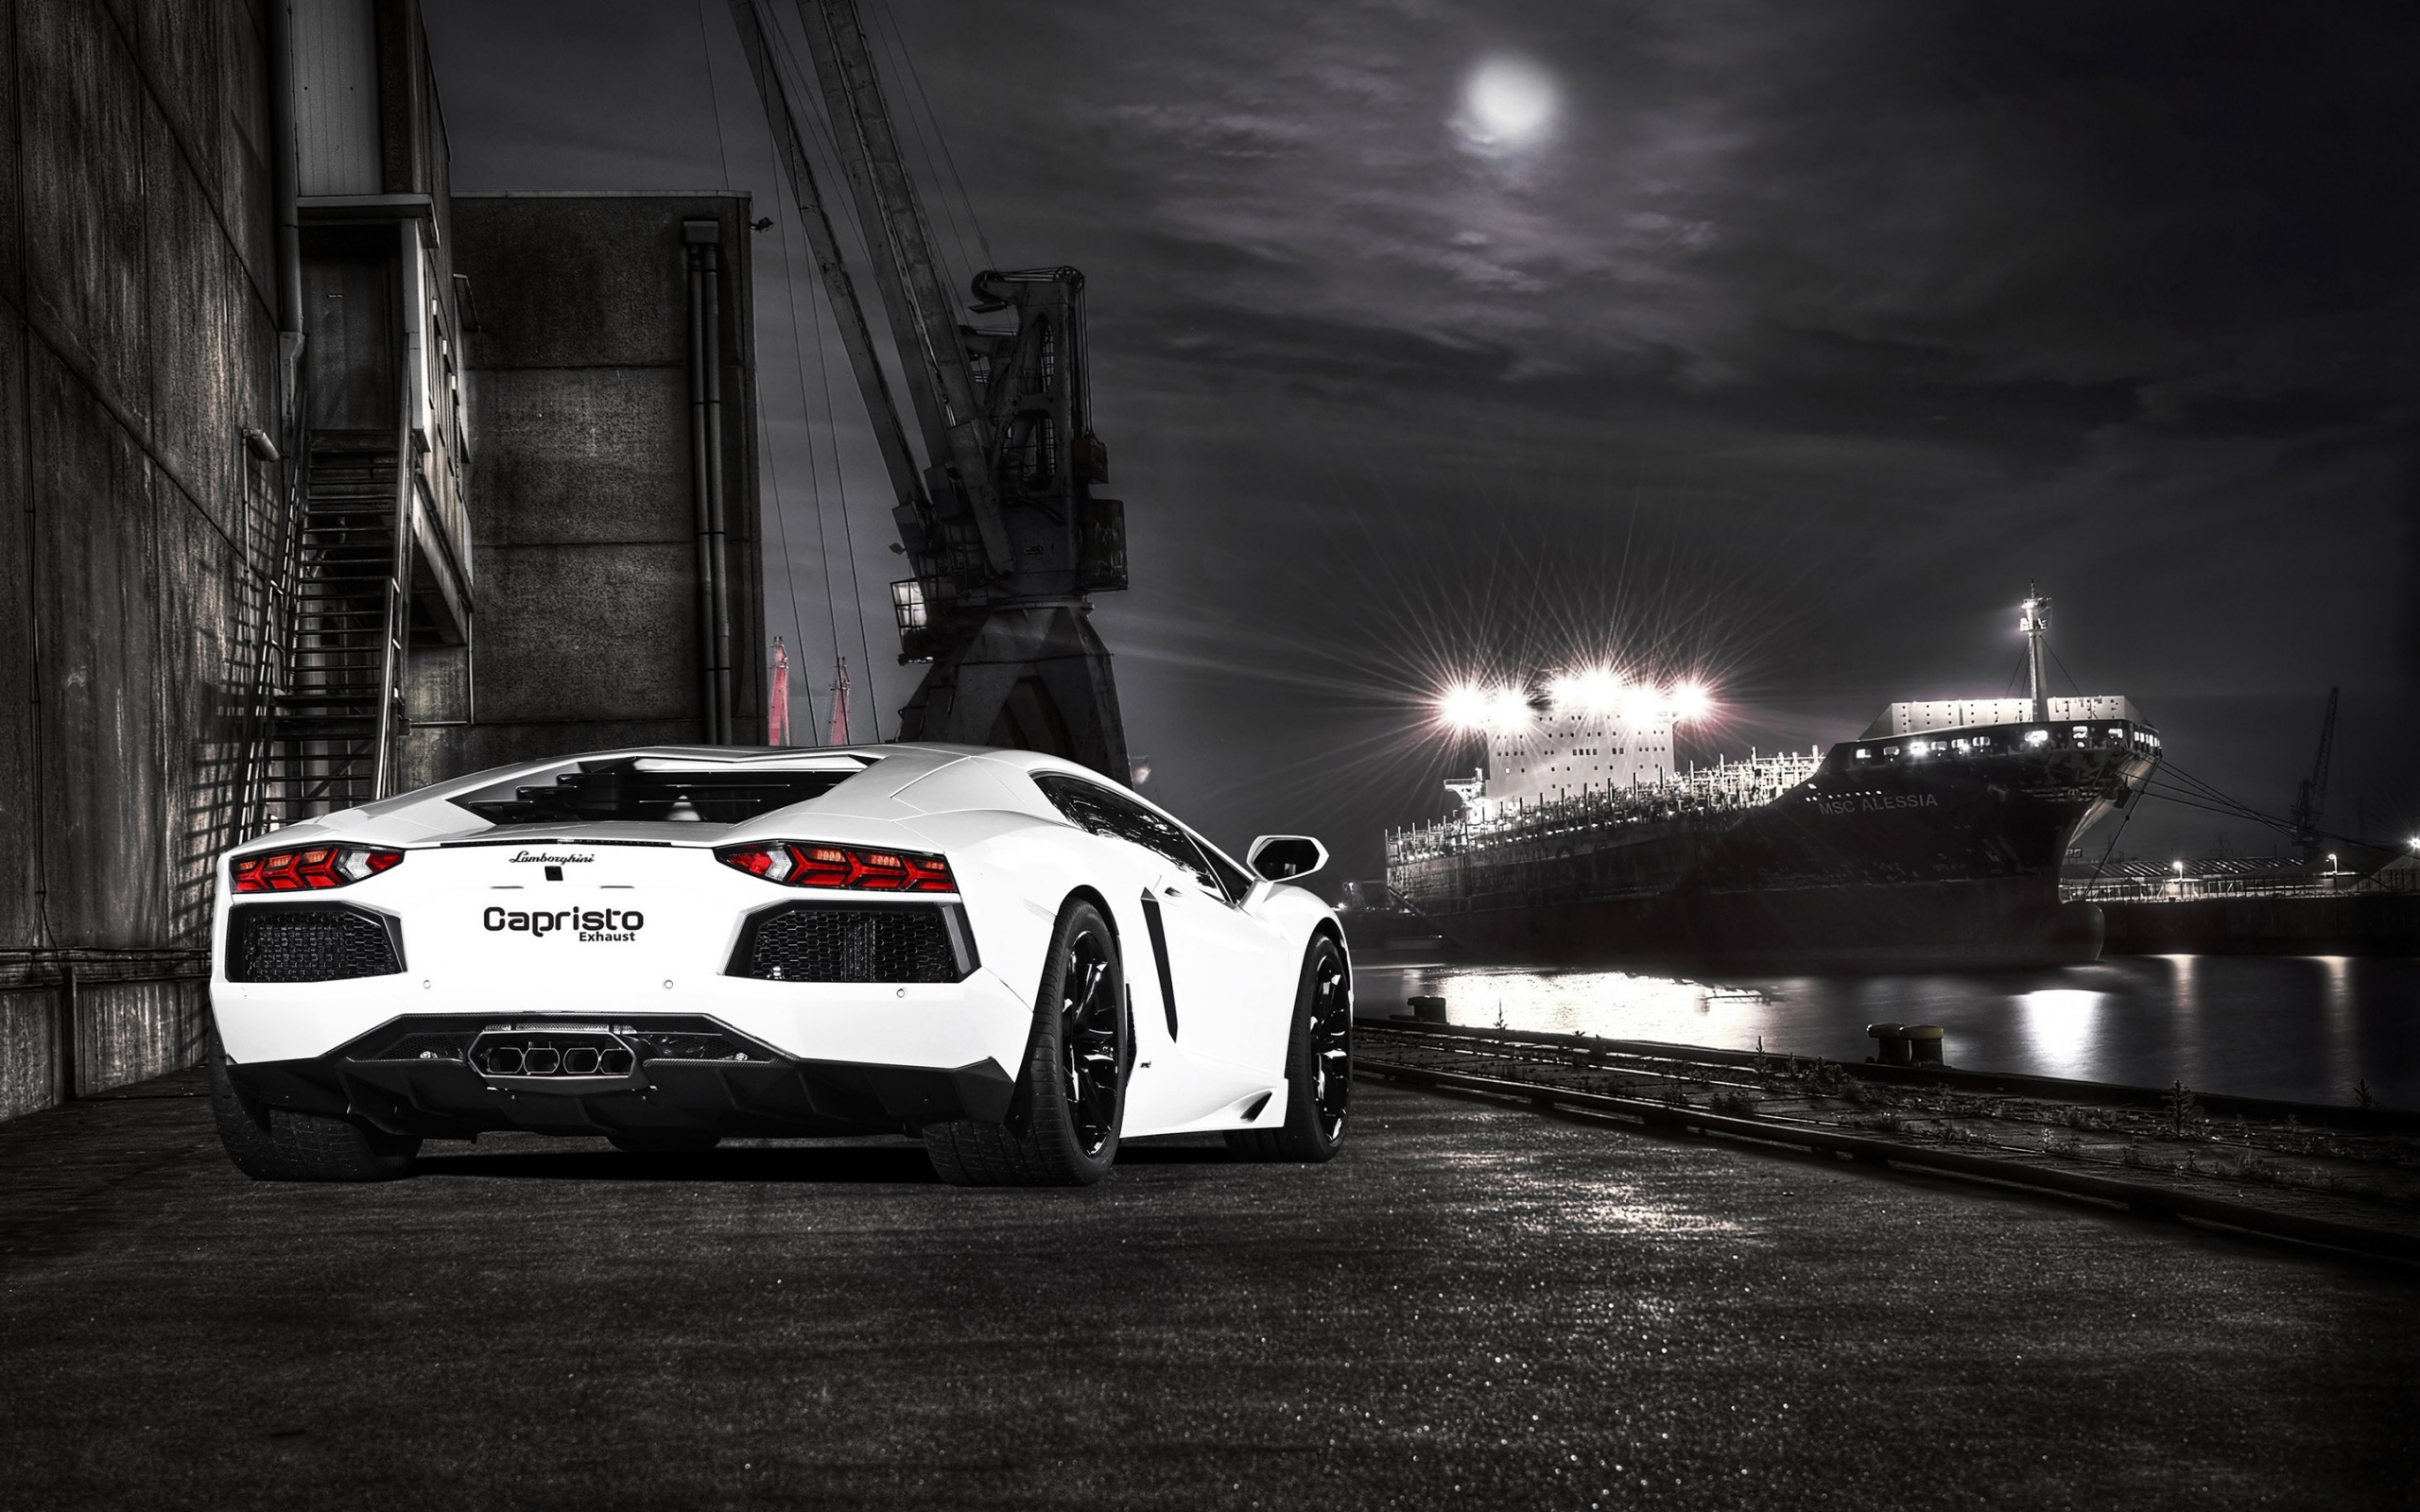 Lamborghini Capristo Aventador for 2560 x 1600 widescreen resolution